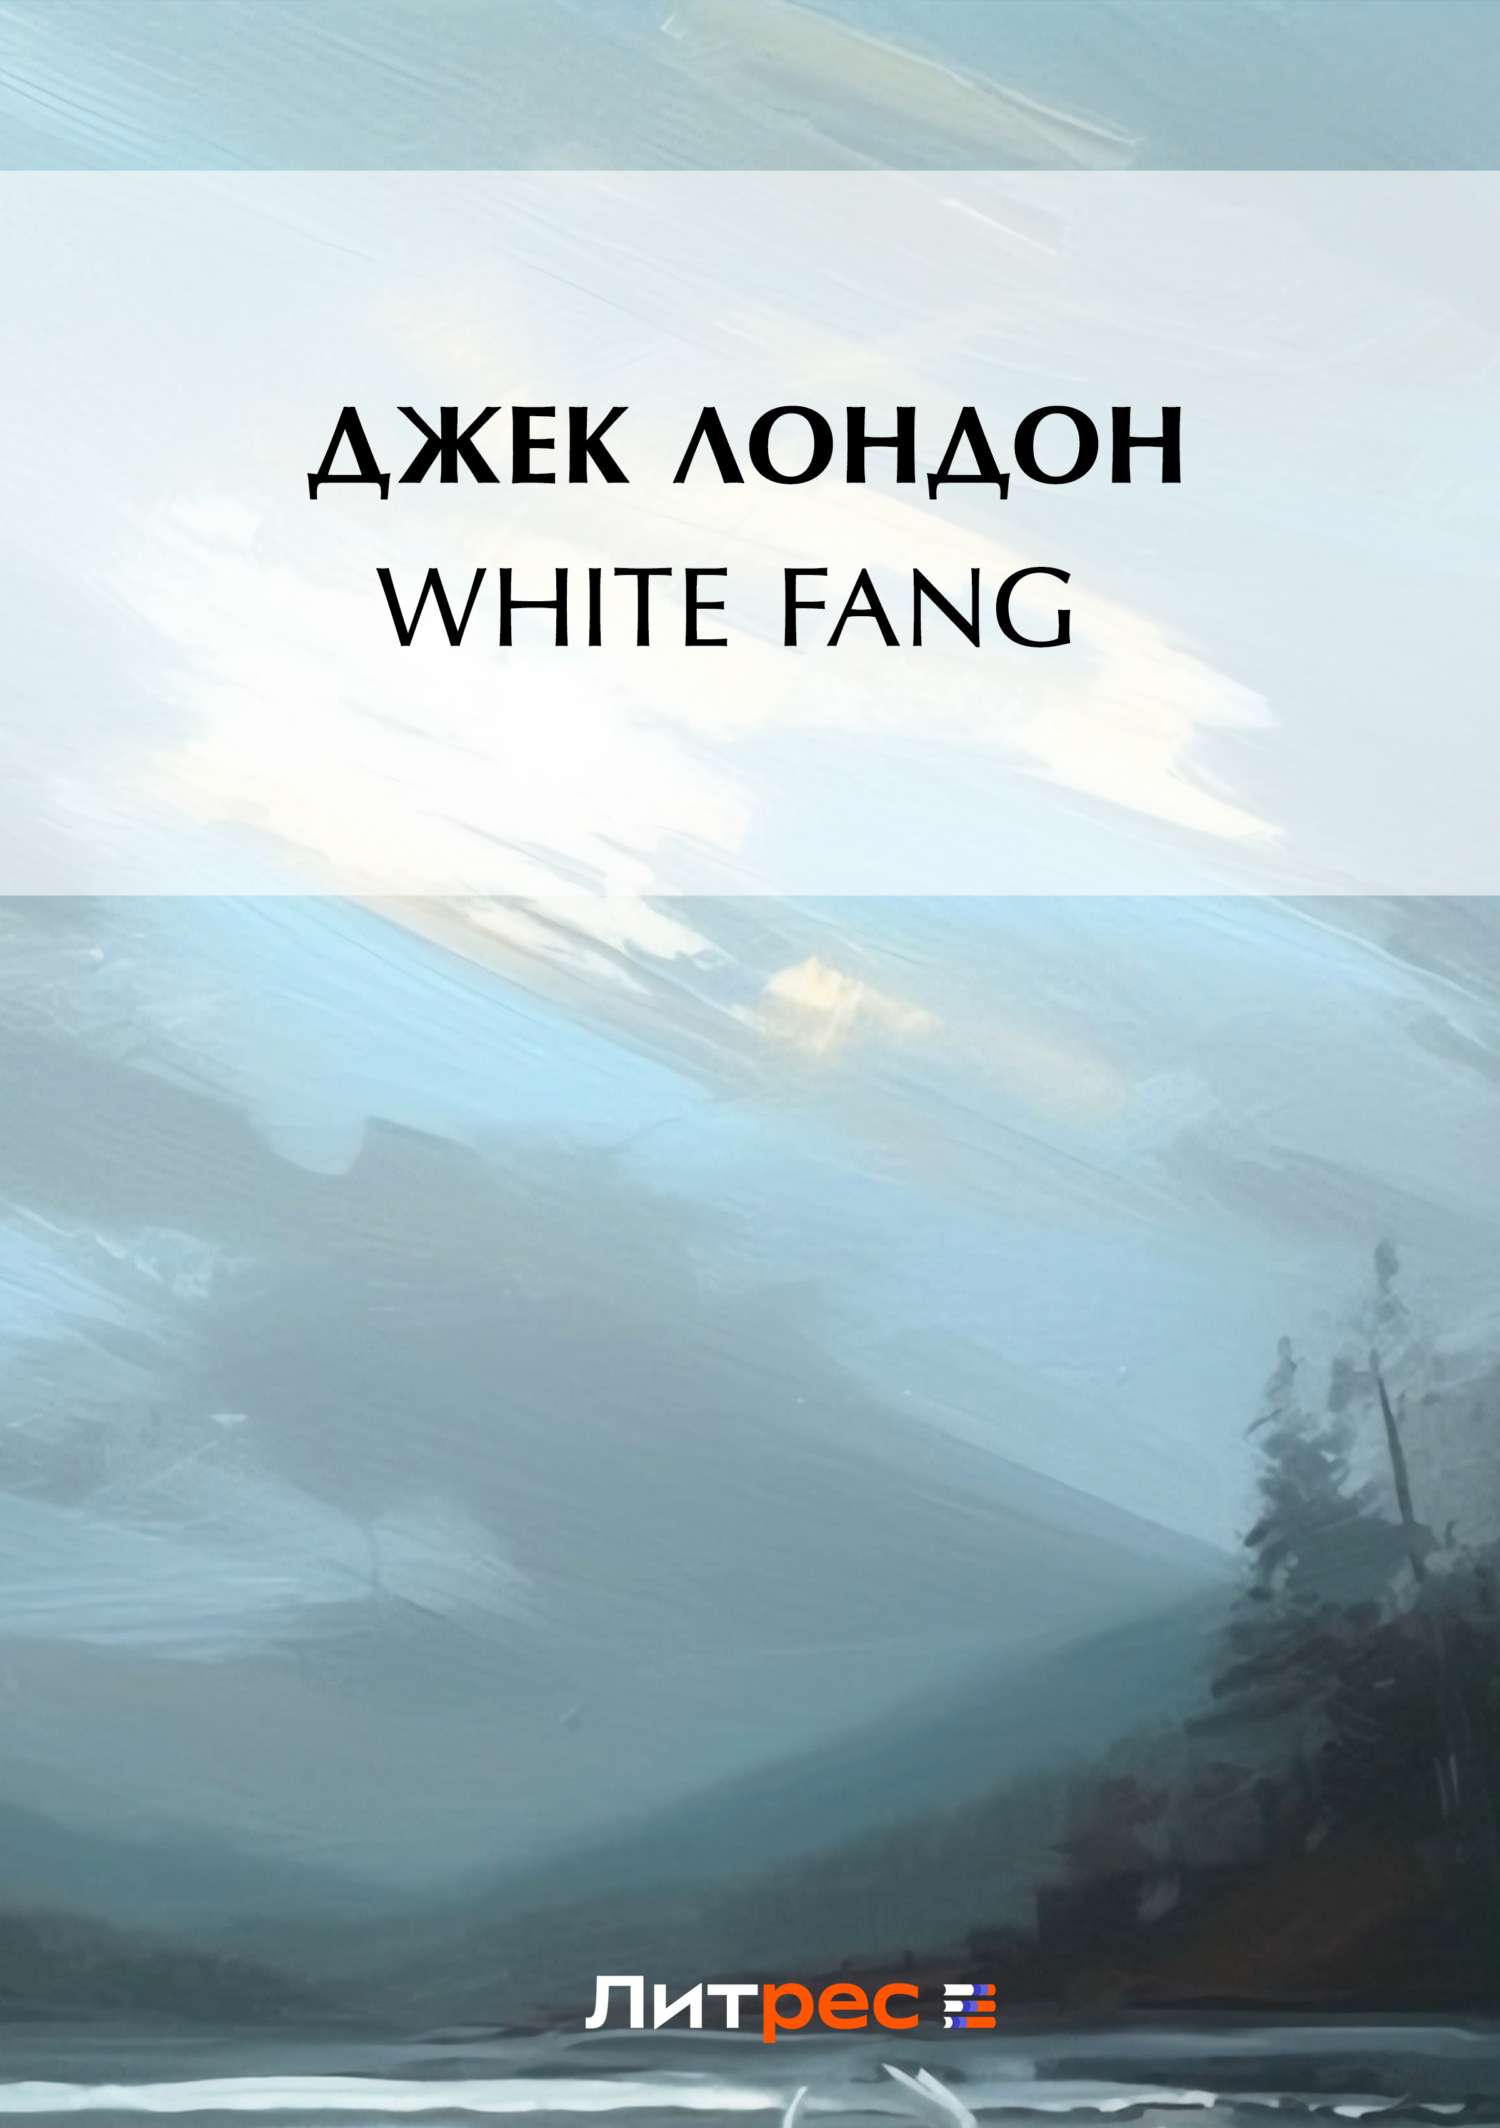 Книга White Fang из серии , созданная Джек Лондон, может относится к жанру Зарубежные приключения, Литература 20 века. Стоимость электронной книги White Fang с идентификатором 119437 составляет 29.95 руб.